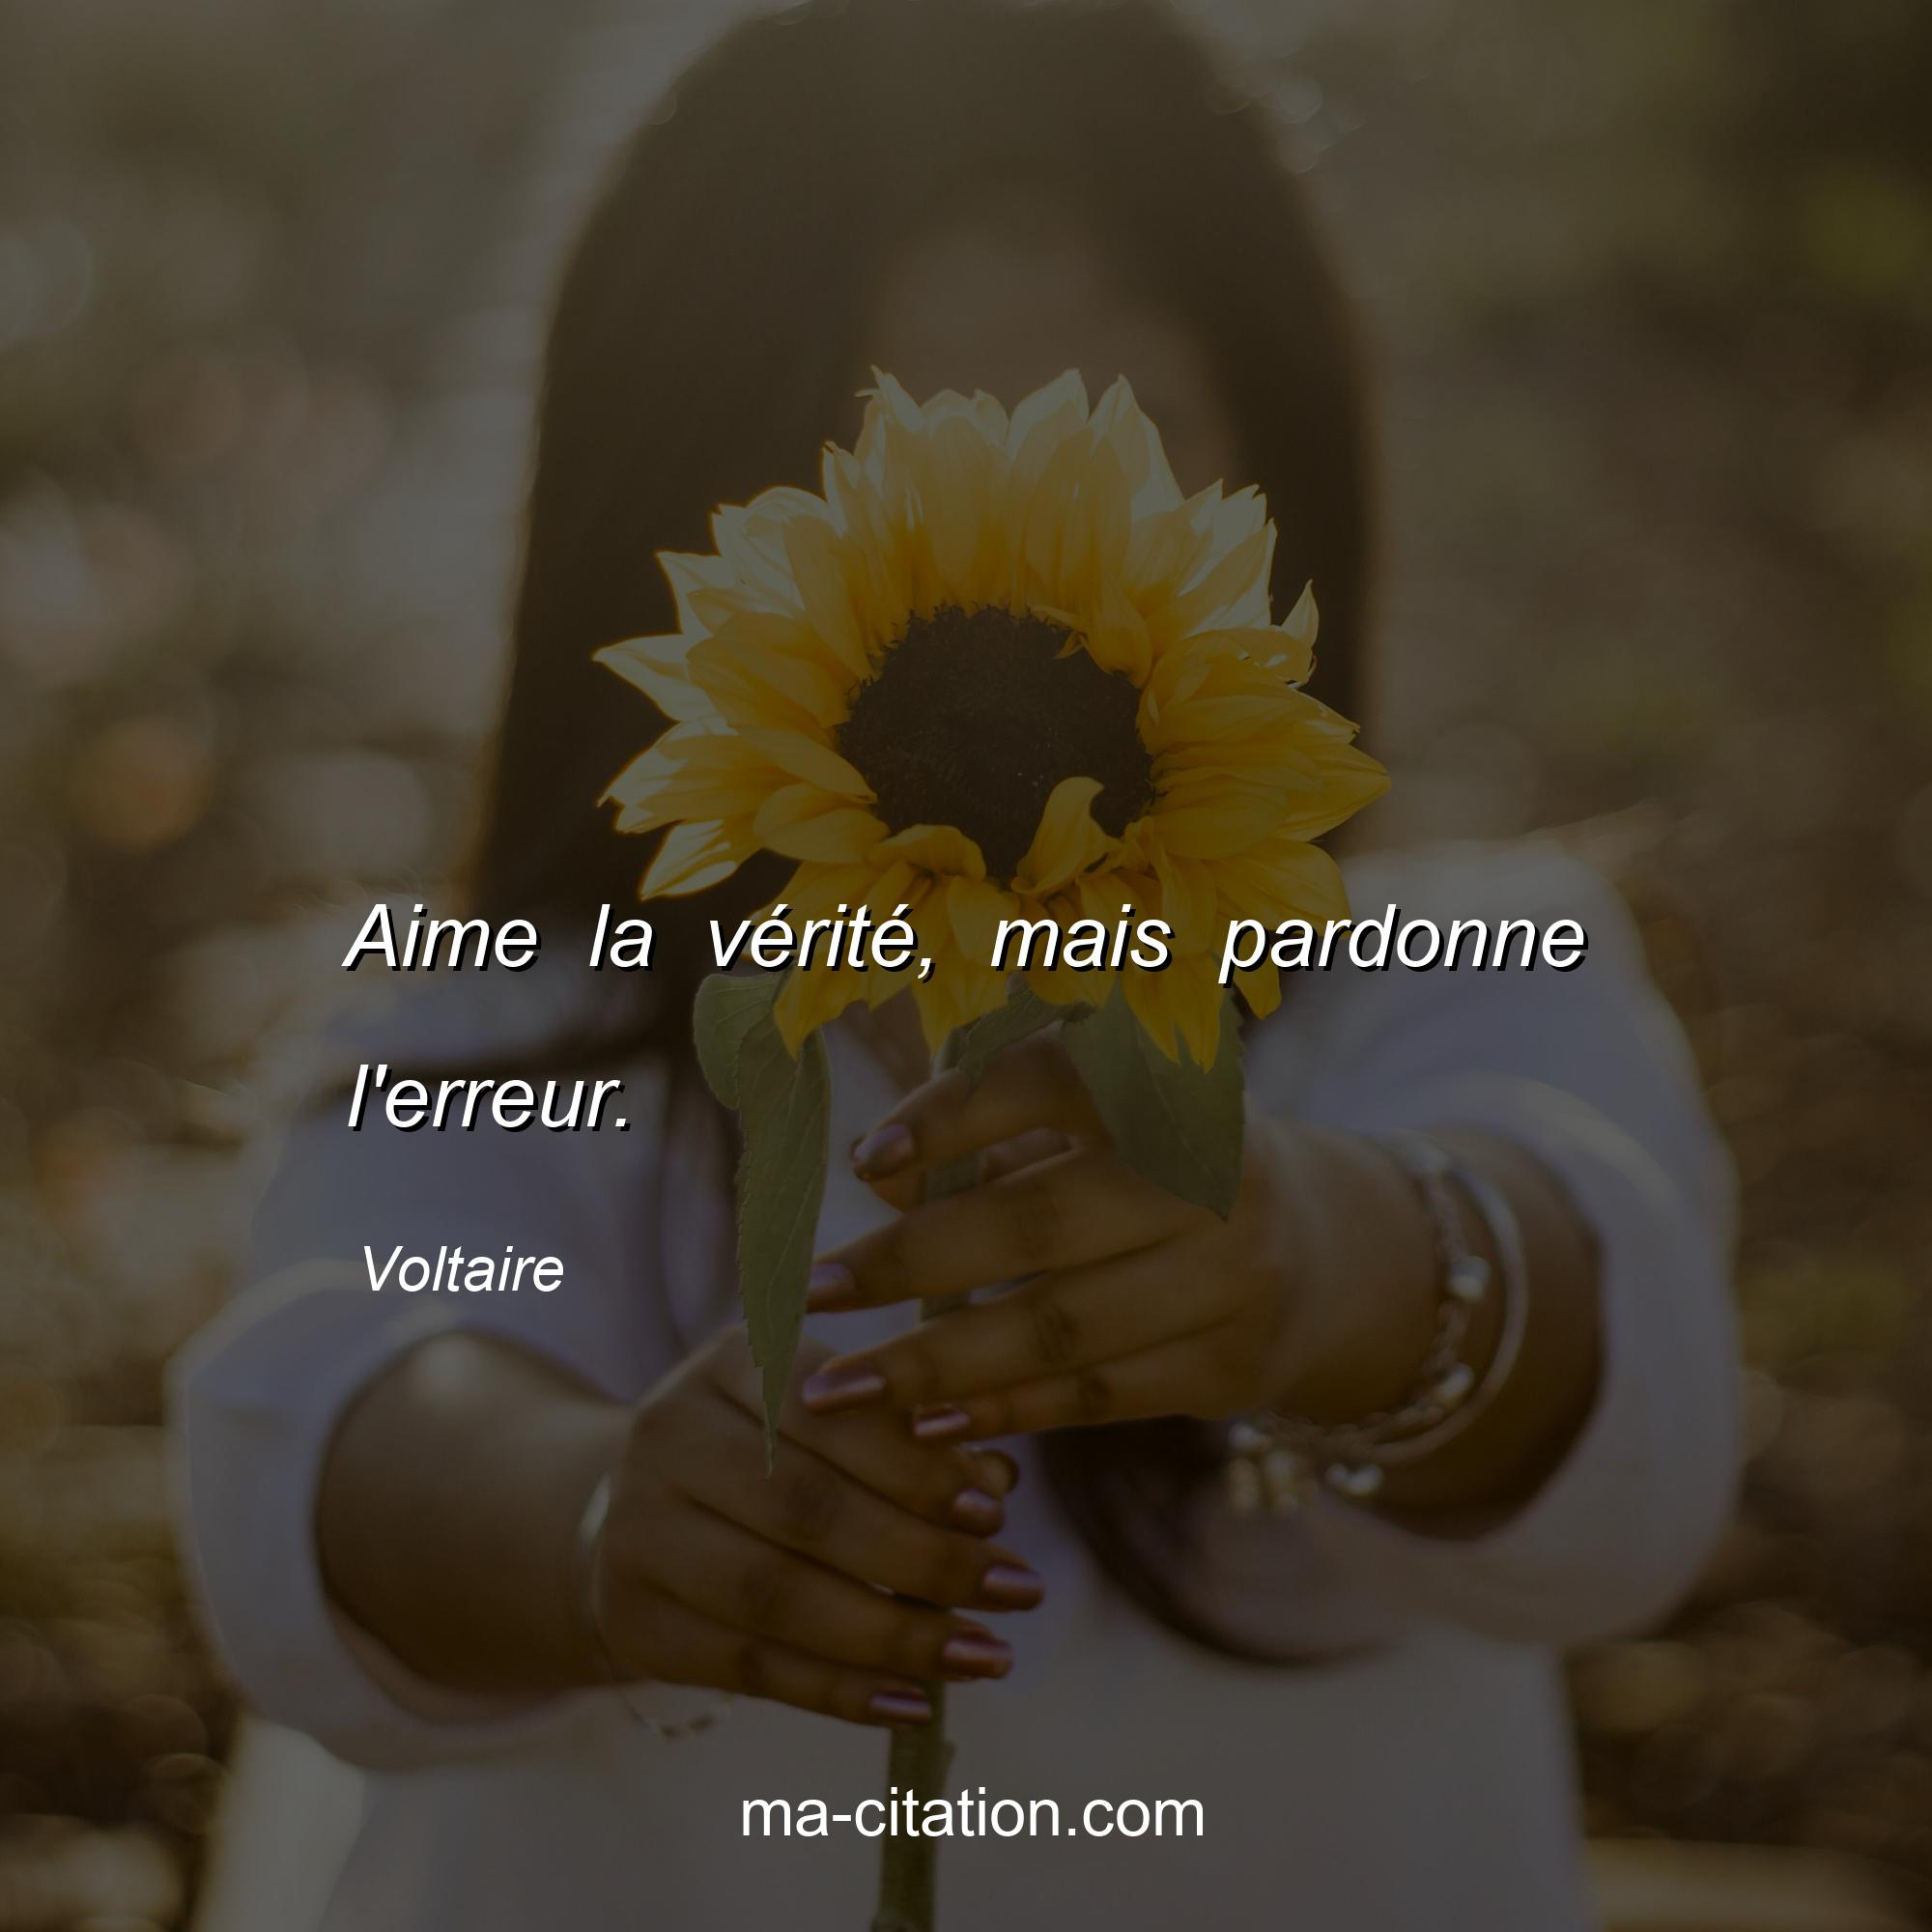 Voltaire : Aime la vérité, mais pardonne l'erreur.